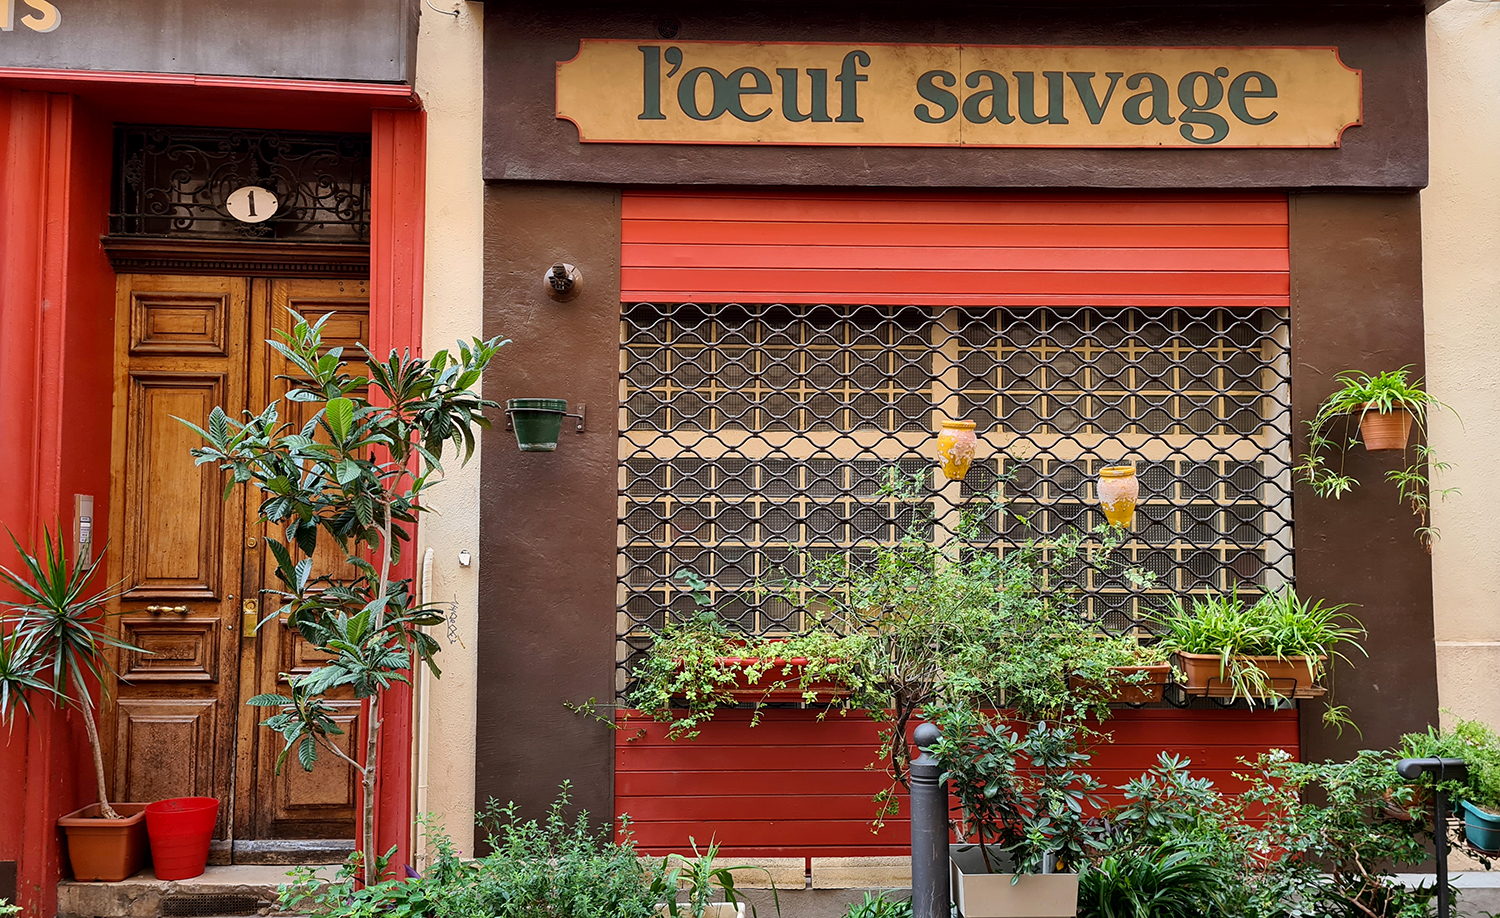 L’Œuf Sauvage et Bois & Charbons de Claude Roffat